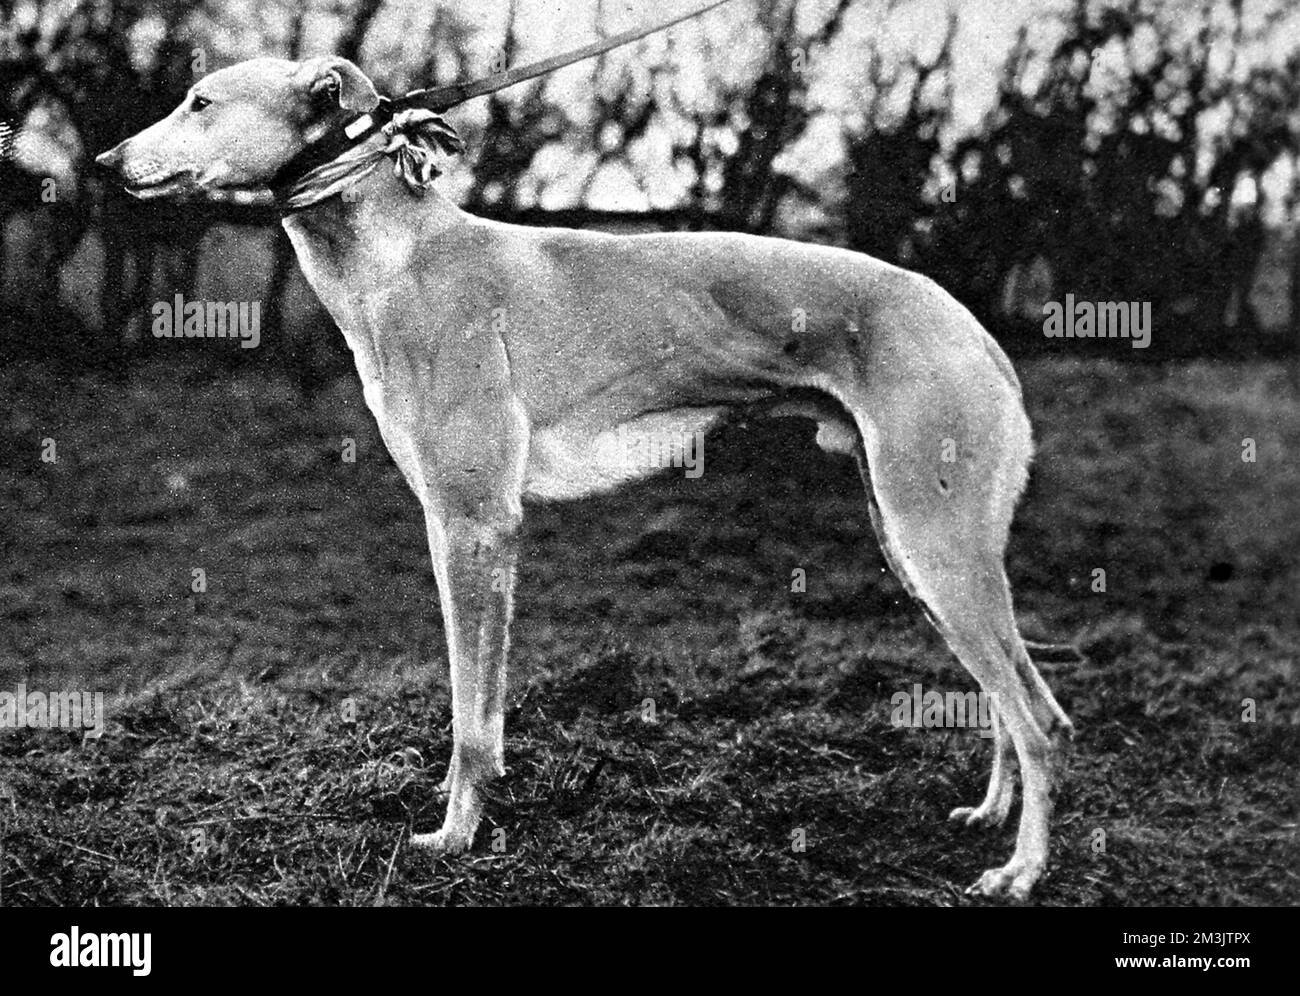 Photographie du « juge jovial » greyhound, propriété de M. J.L. Jarvis et formé par M. Denny Smith; gagnant de la coupe Waterloo 1926. Le 19th février, 'jovial Judge' a battu la 'course à pied' de deux longueurs sur le cours décisif. Date: 1926 Banque D'Images